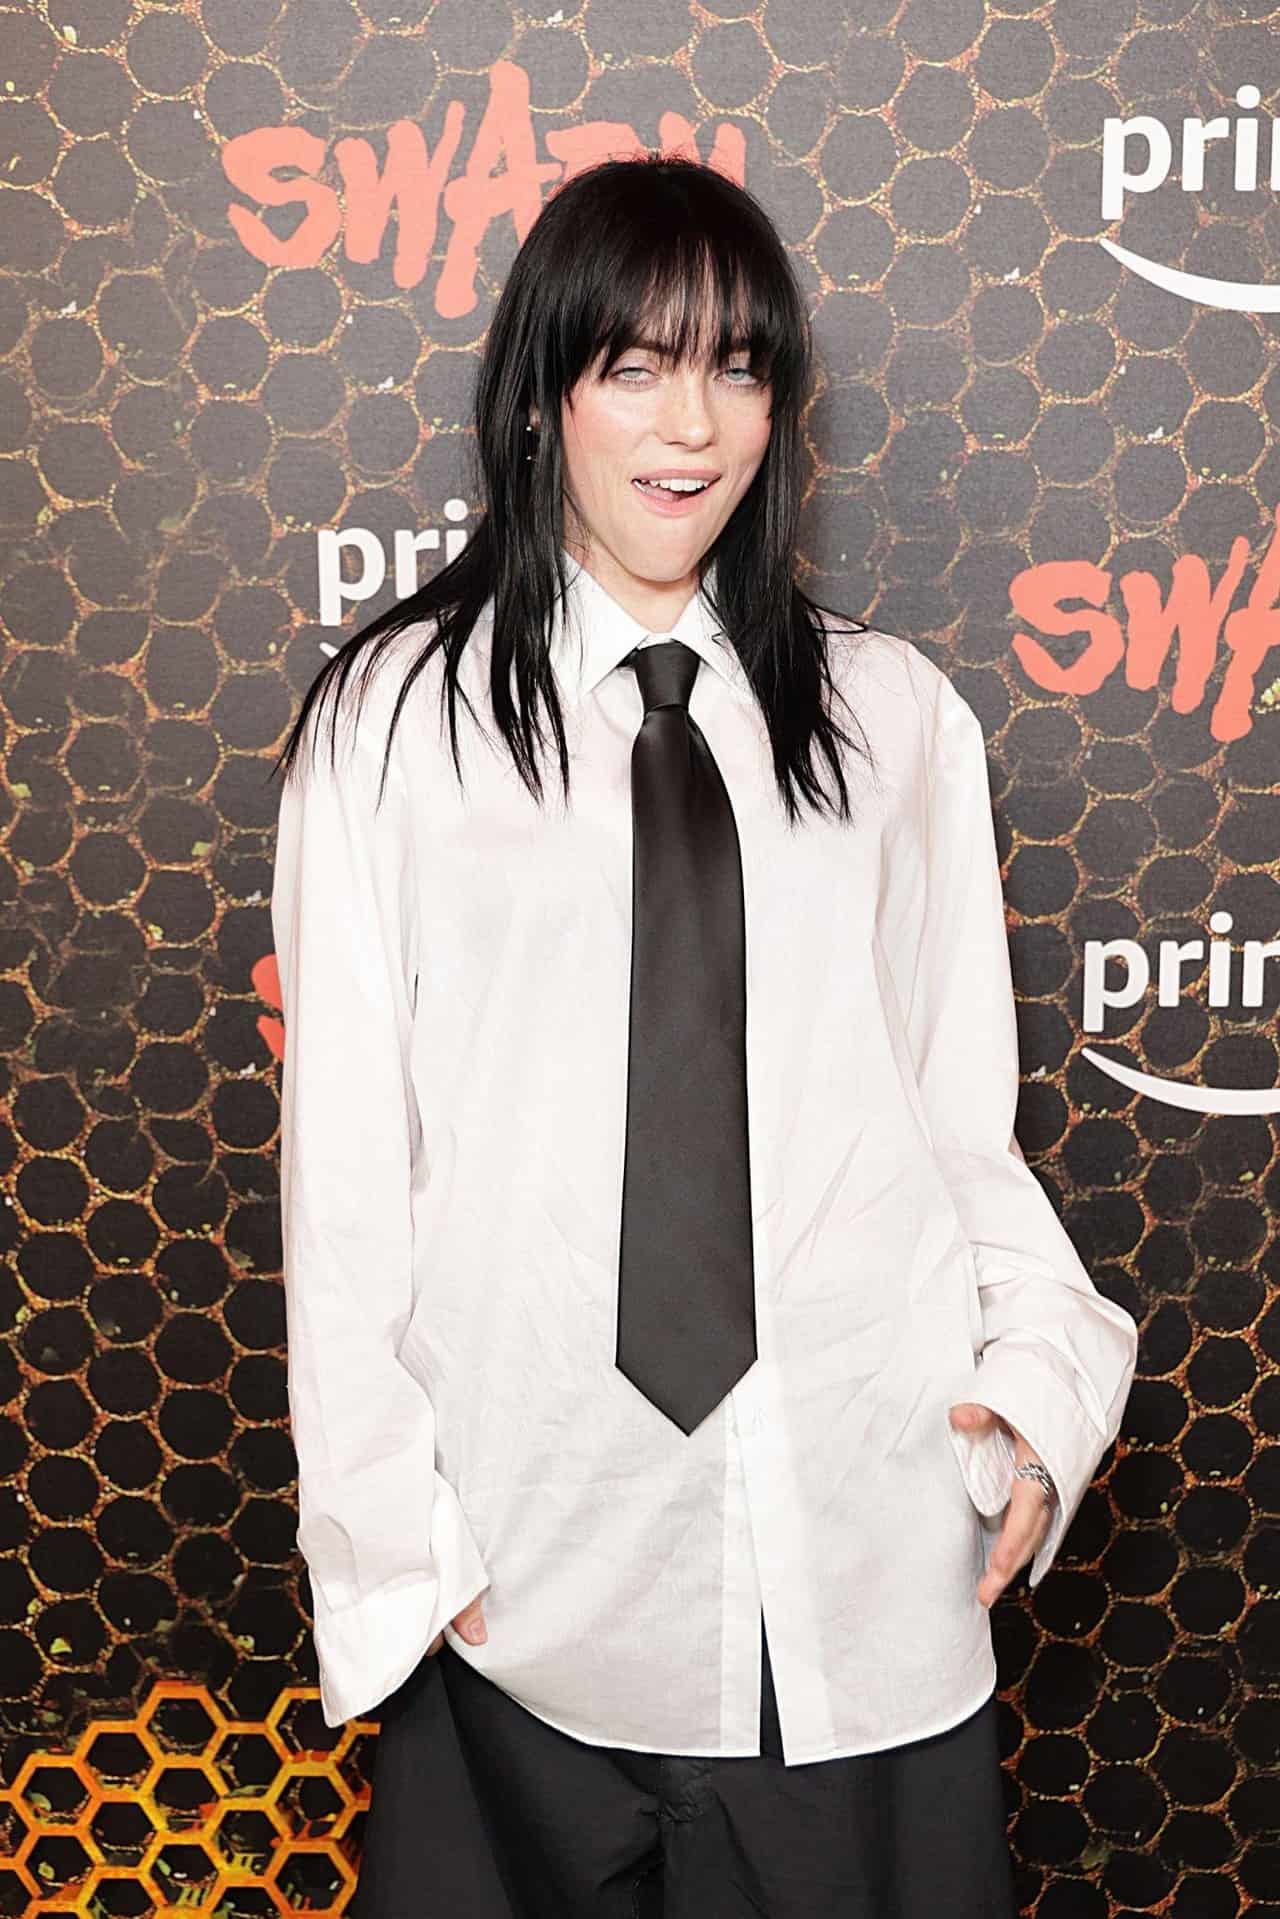 Billie Eilish Brings Back Y2K Style at "Swarm" Premiere in LA